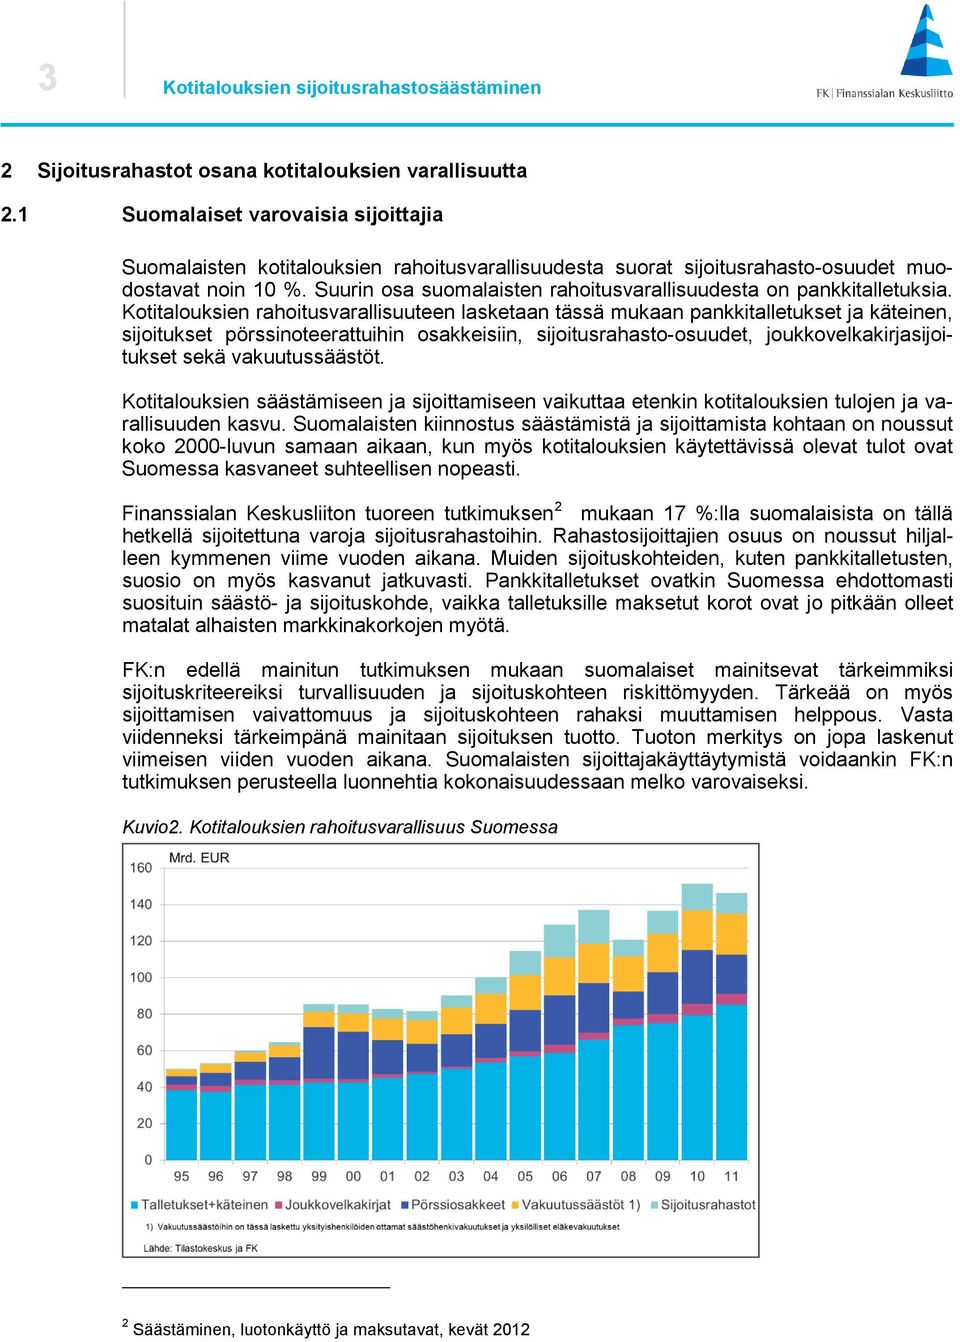 Suurin osa suomalaisten rahoitusvarallisuudesta on pankkitalletuksia.